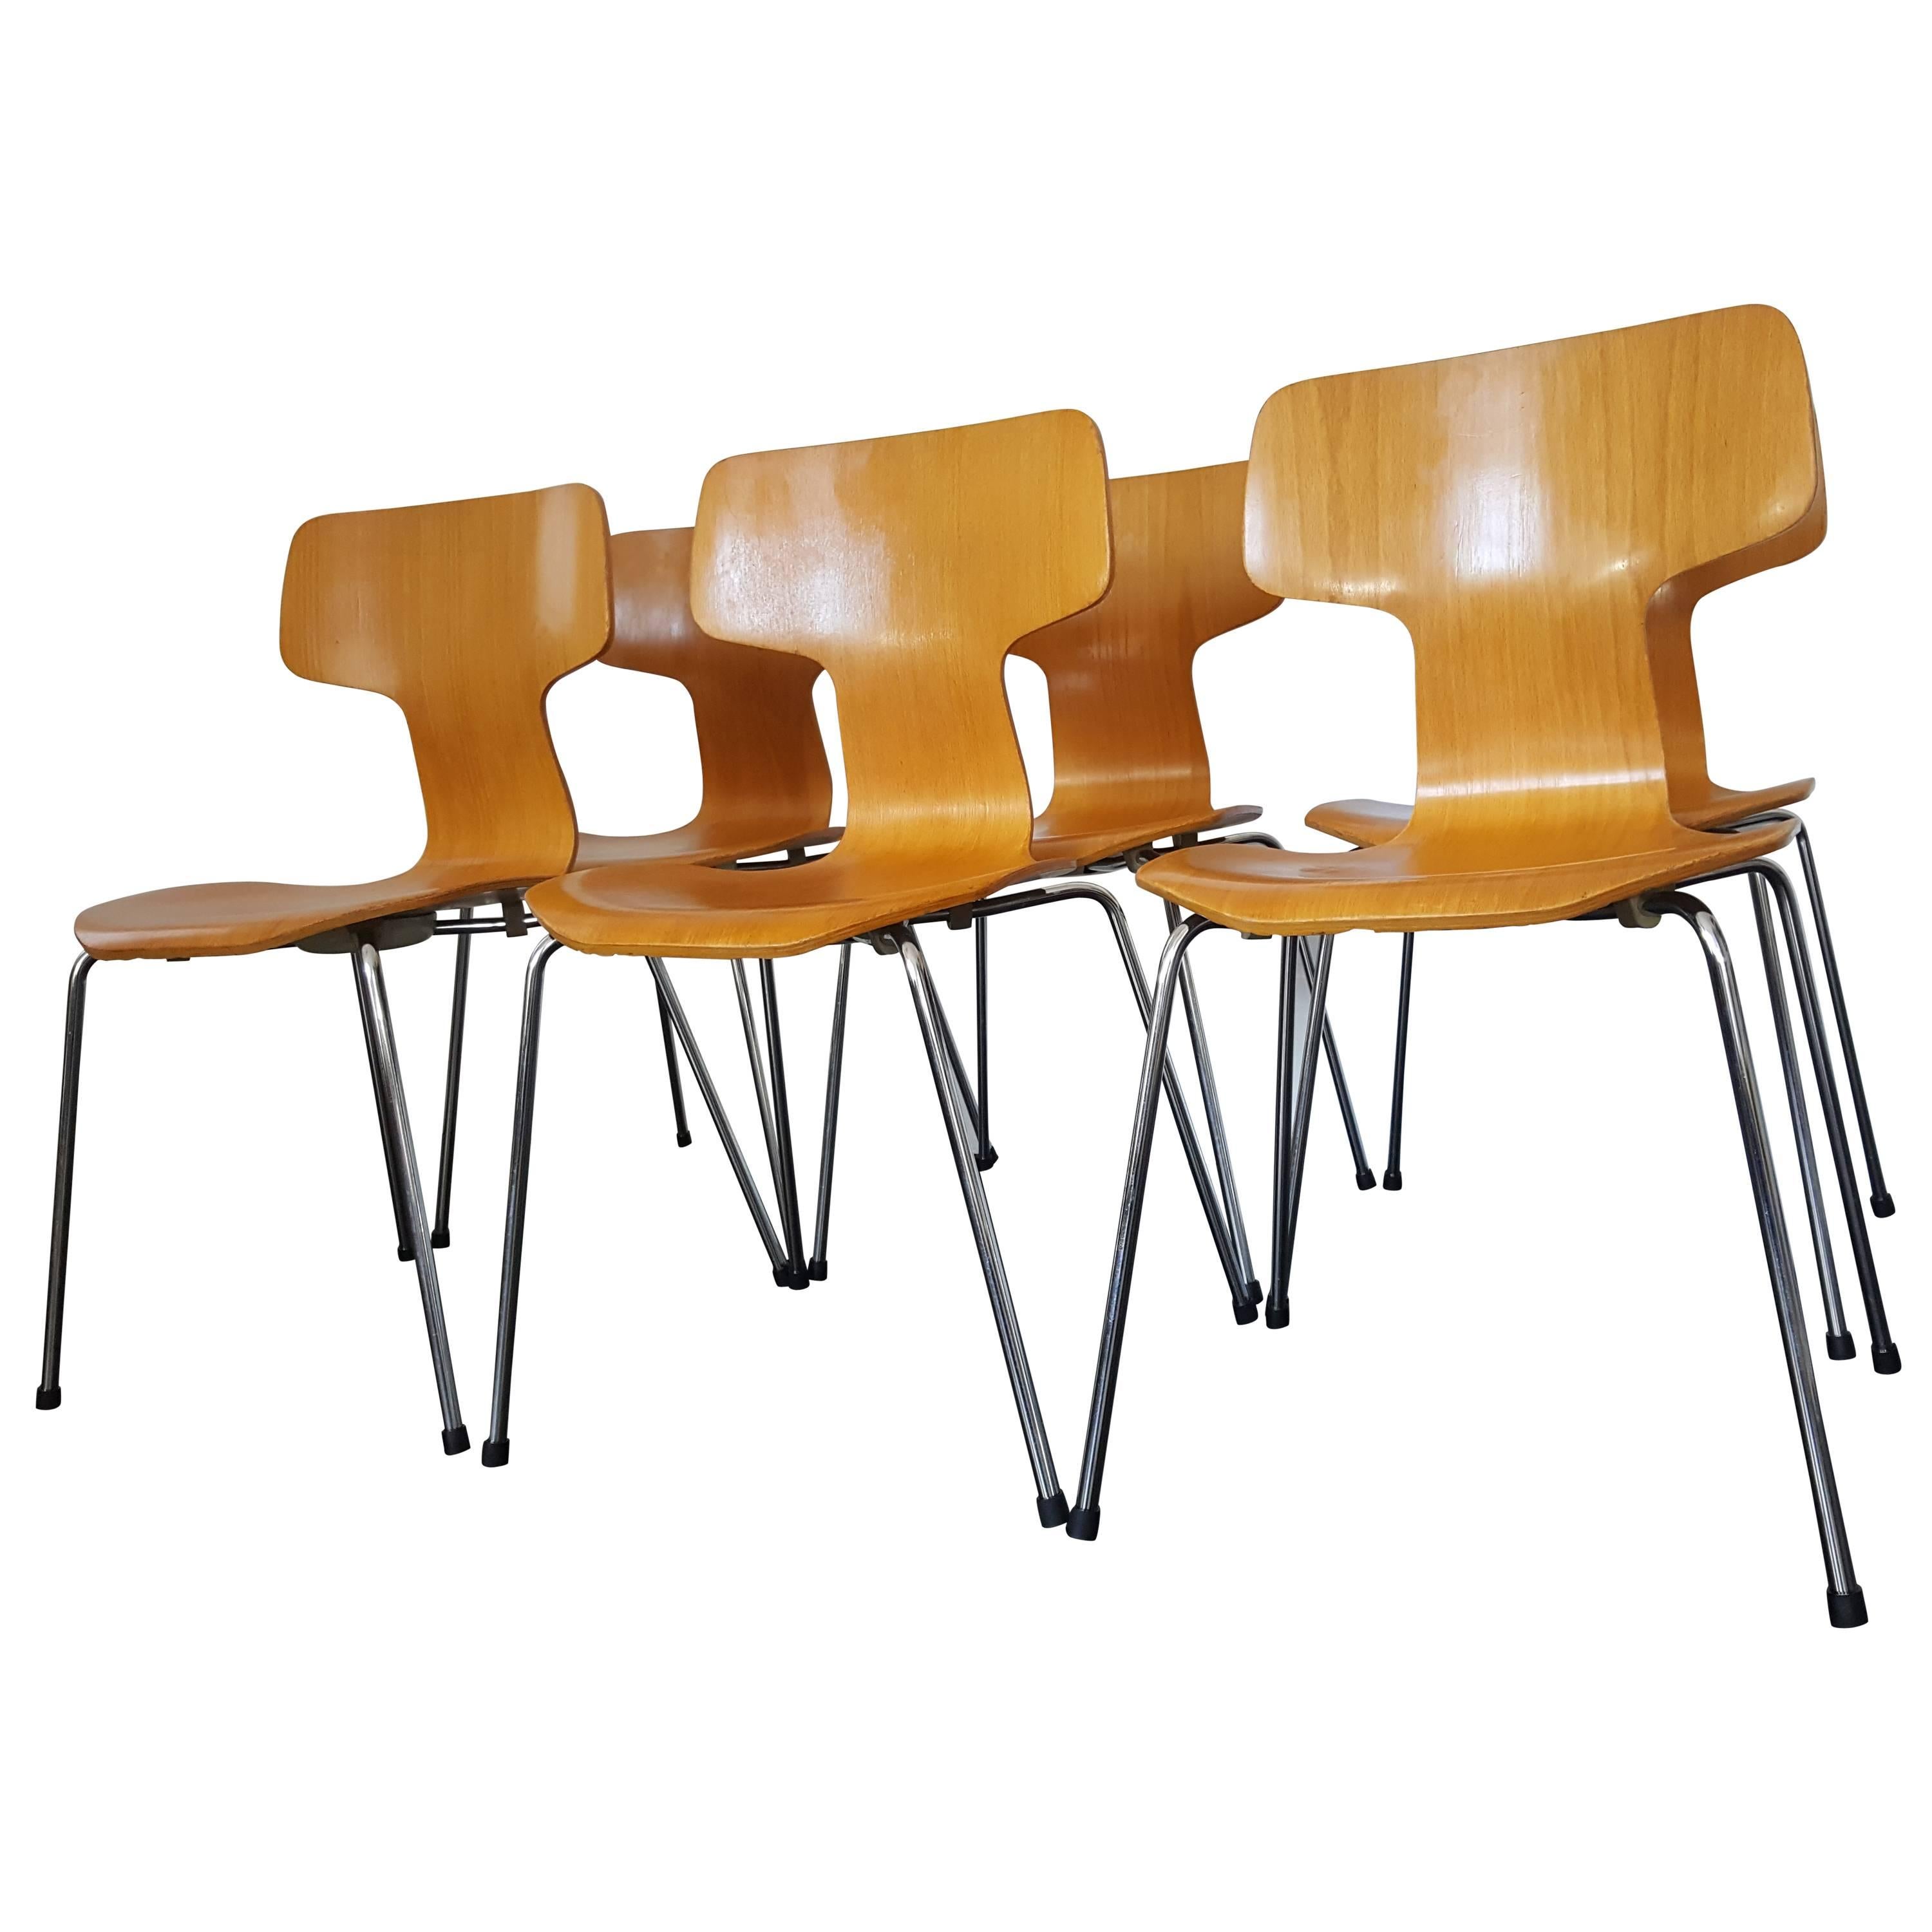 Six Model 3103 Beech Hammer/T Chairs by Arne Jacobsen for Fritz Hansen